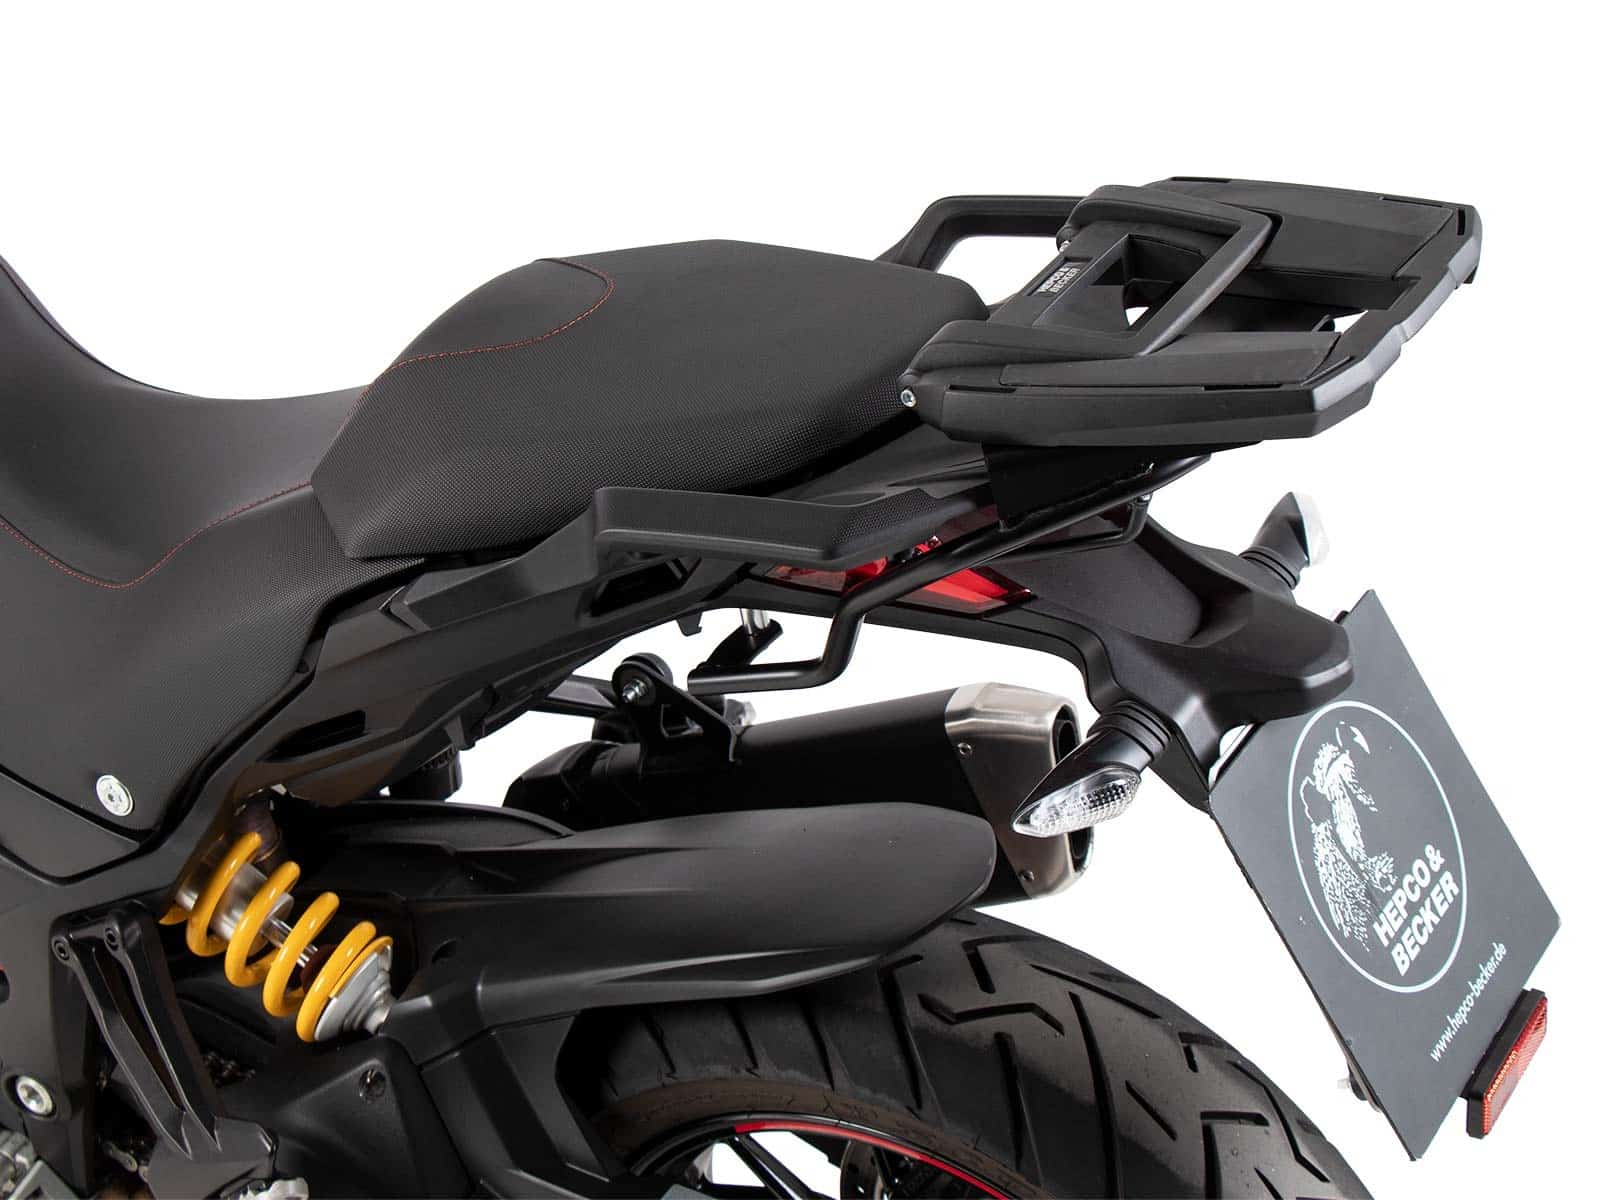 Black BY H&B Ducati Multistrada 1200/S 2010-2014 Easyrack Topcase Carrier 